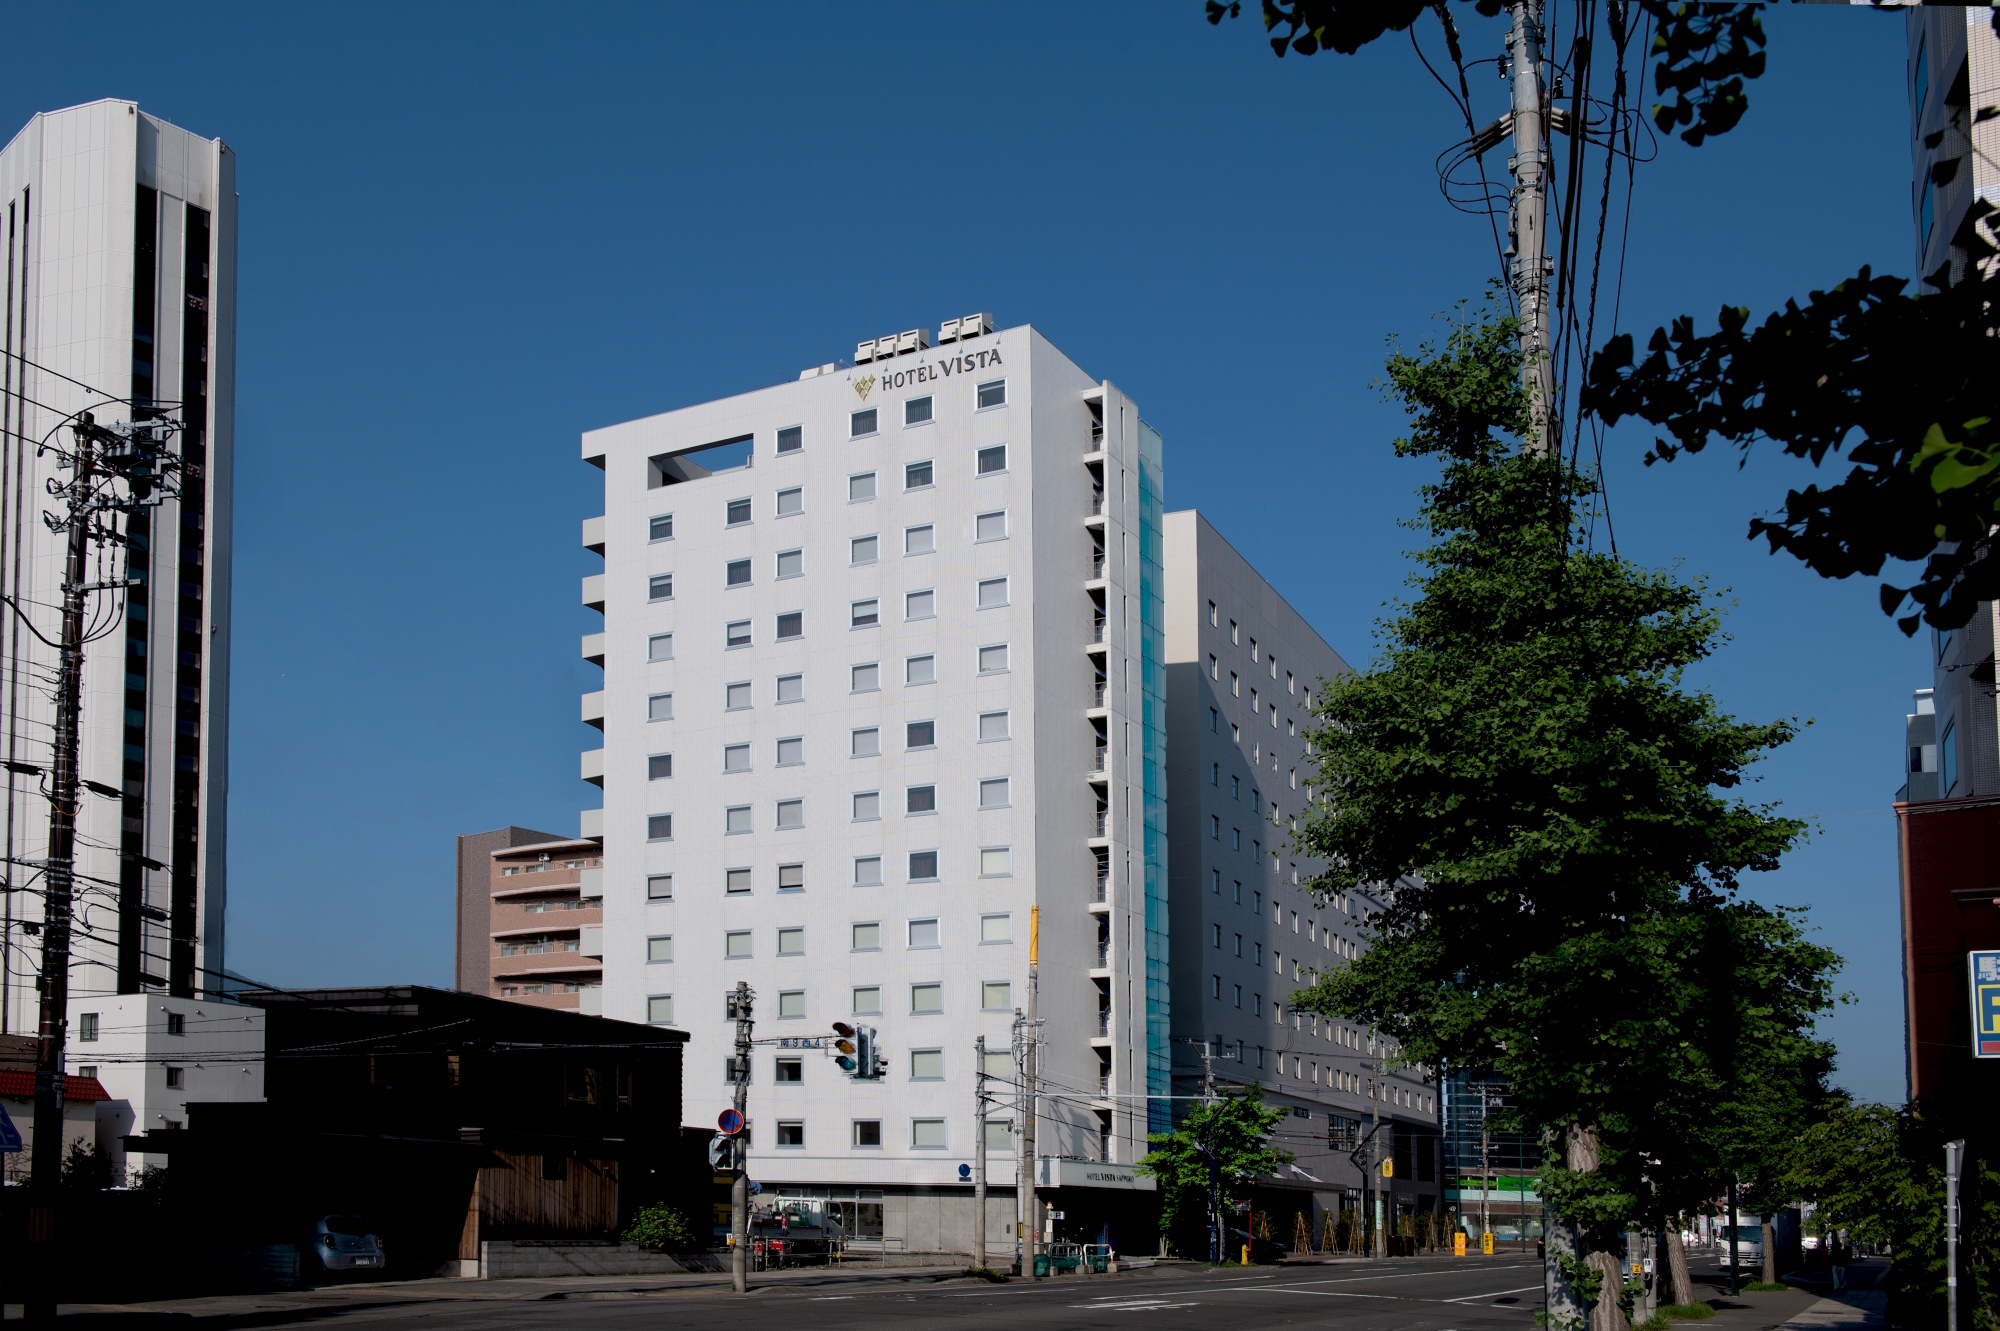 札幌駅周辺のでとにかく格安で泊まれるおすすめのホテルを教えください。